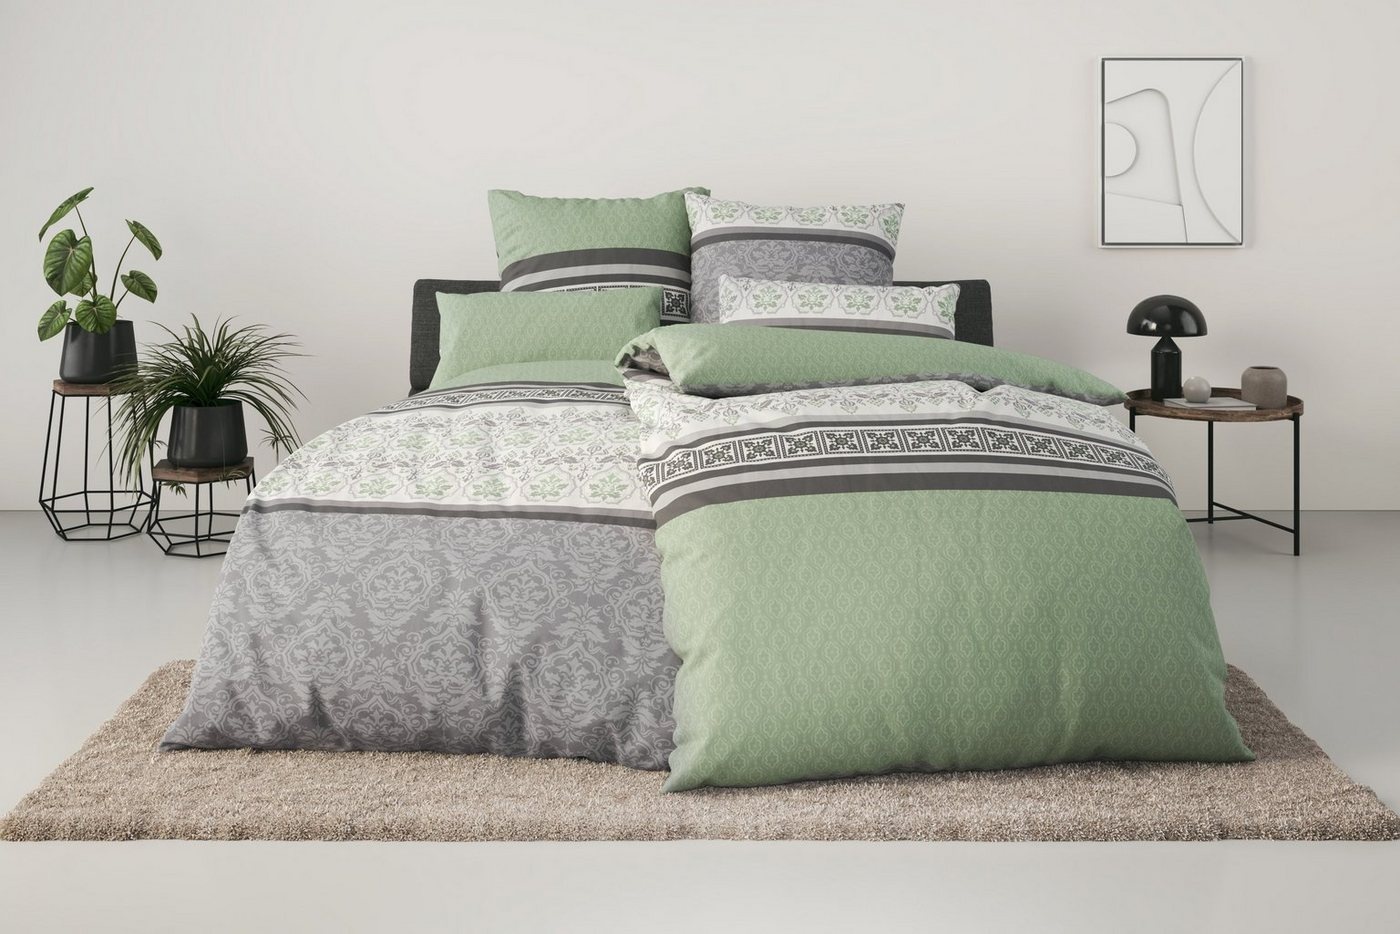 Bettwäsche PIA, Home affaire, Linon, 3 teilig, romantische Bettwäsche in verschiedenen Qualitäten, ab Gr. 135x200 cm grün 1 St. x 200 cm x 200 cm